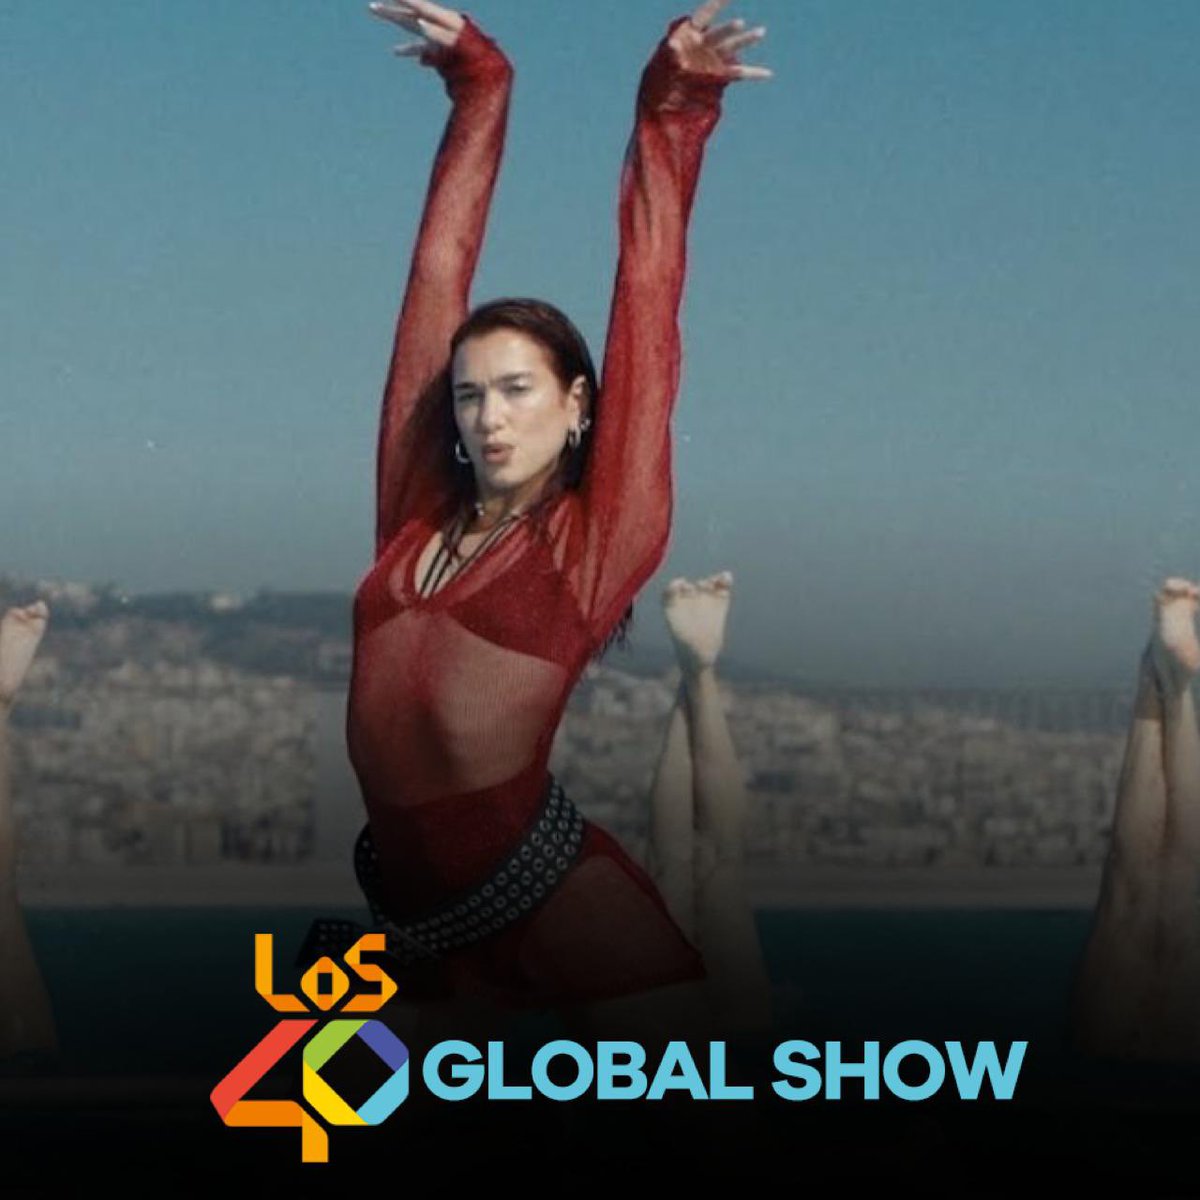 Este domingo en #40GlobalShow448 escucharemos en España y Latinoamérica a @DUALIPA con ILLUSION ✨🎶 @40GlobalShow